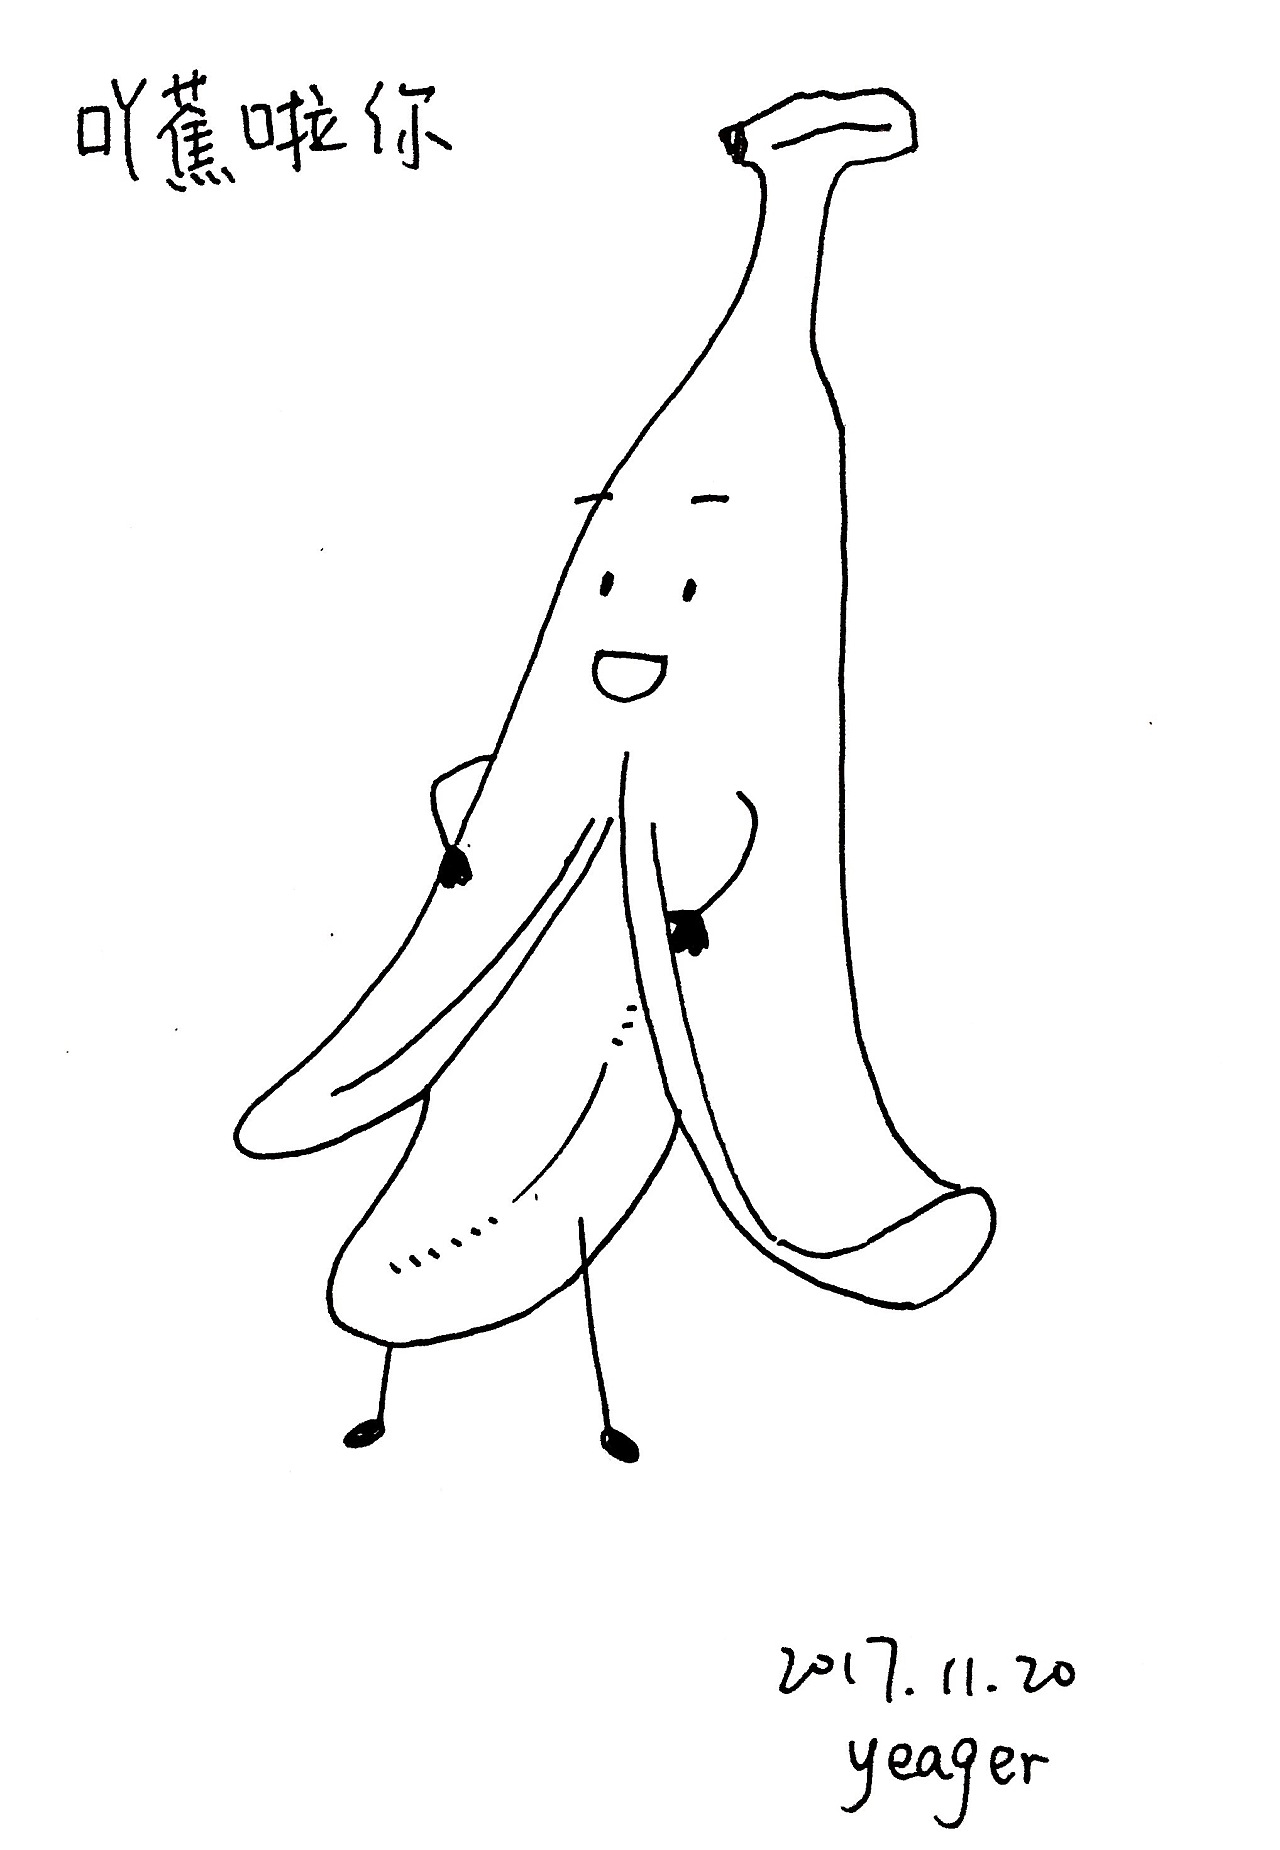 吖蕉啦你:吃香蕉啦你:)